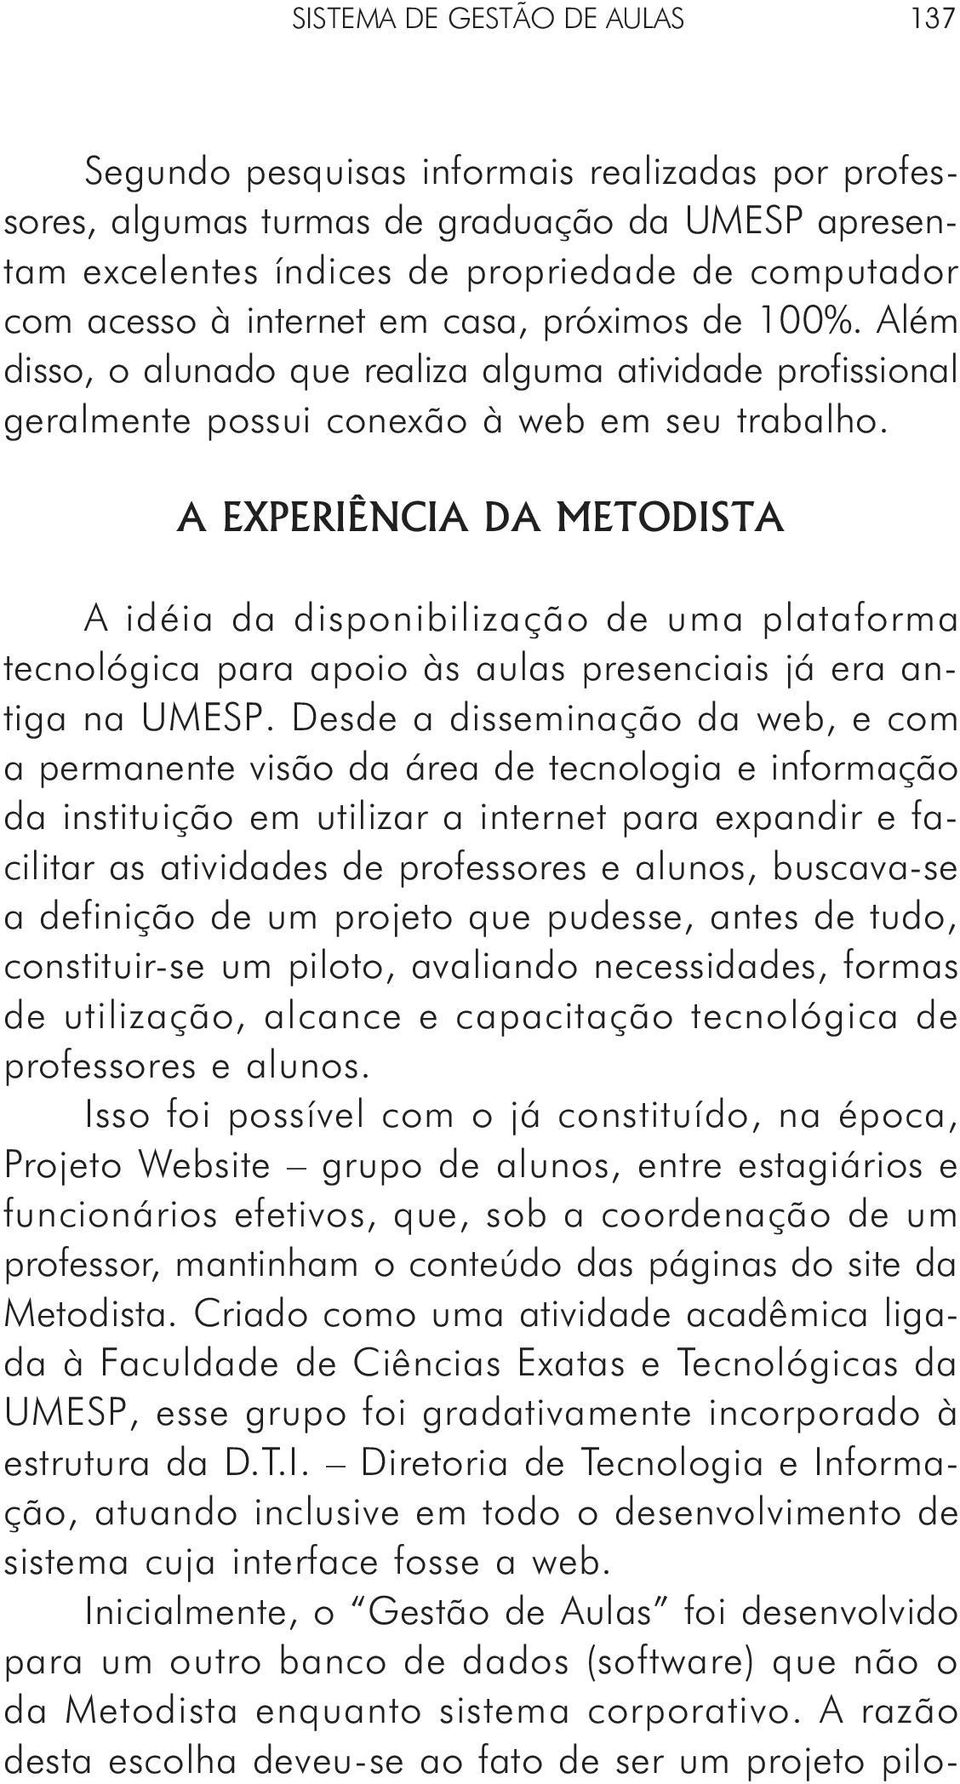 A EXPERIÊNCIA DA METODISTA A idéia da disponibilização de uma plataforma tecnológica para apoio às aulas presenciais já era antiga na UMESP.